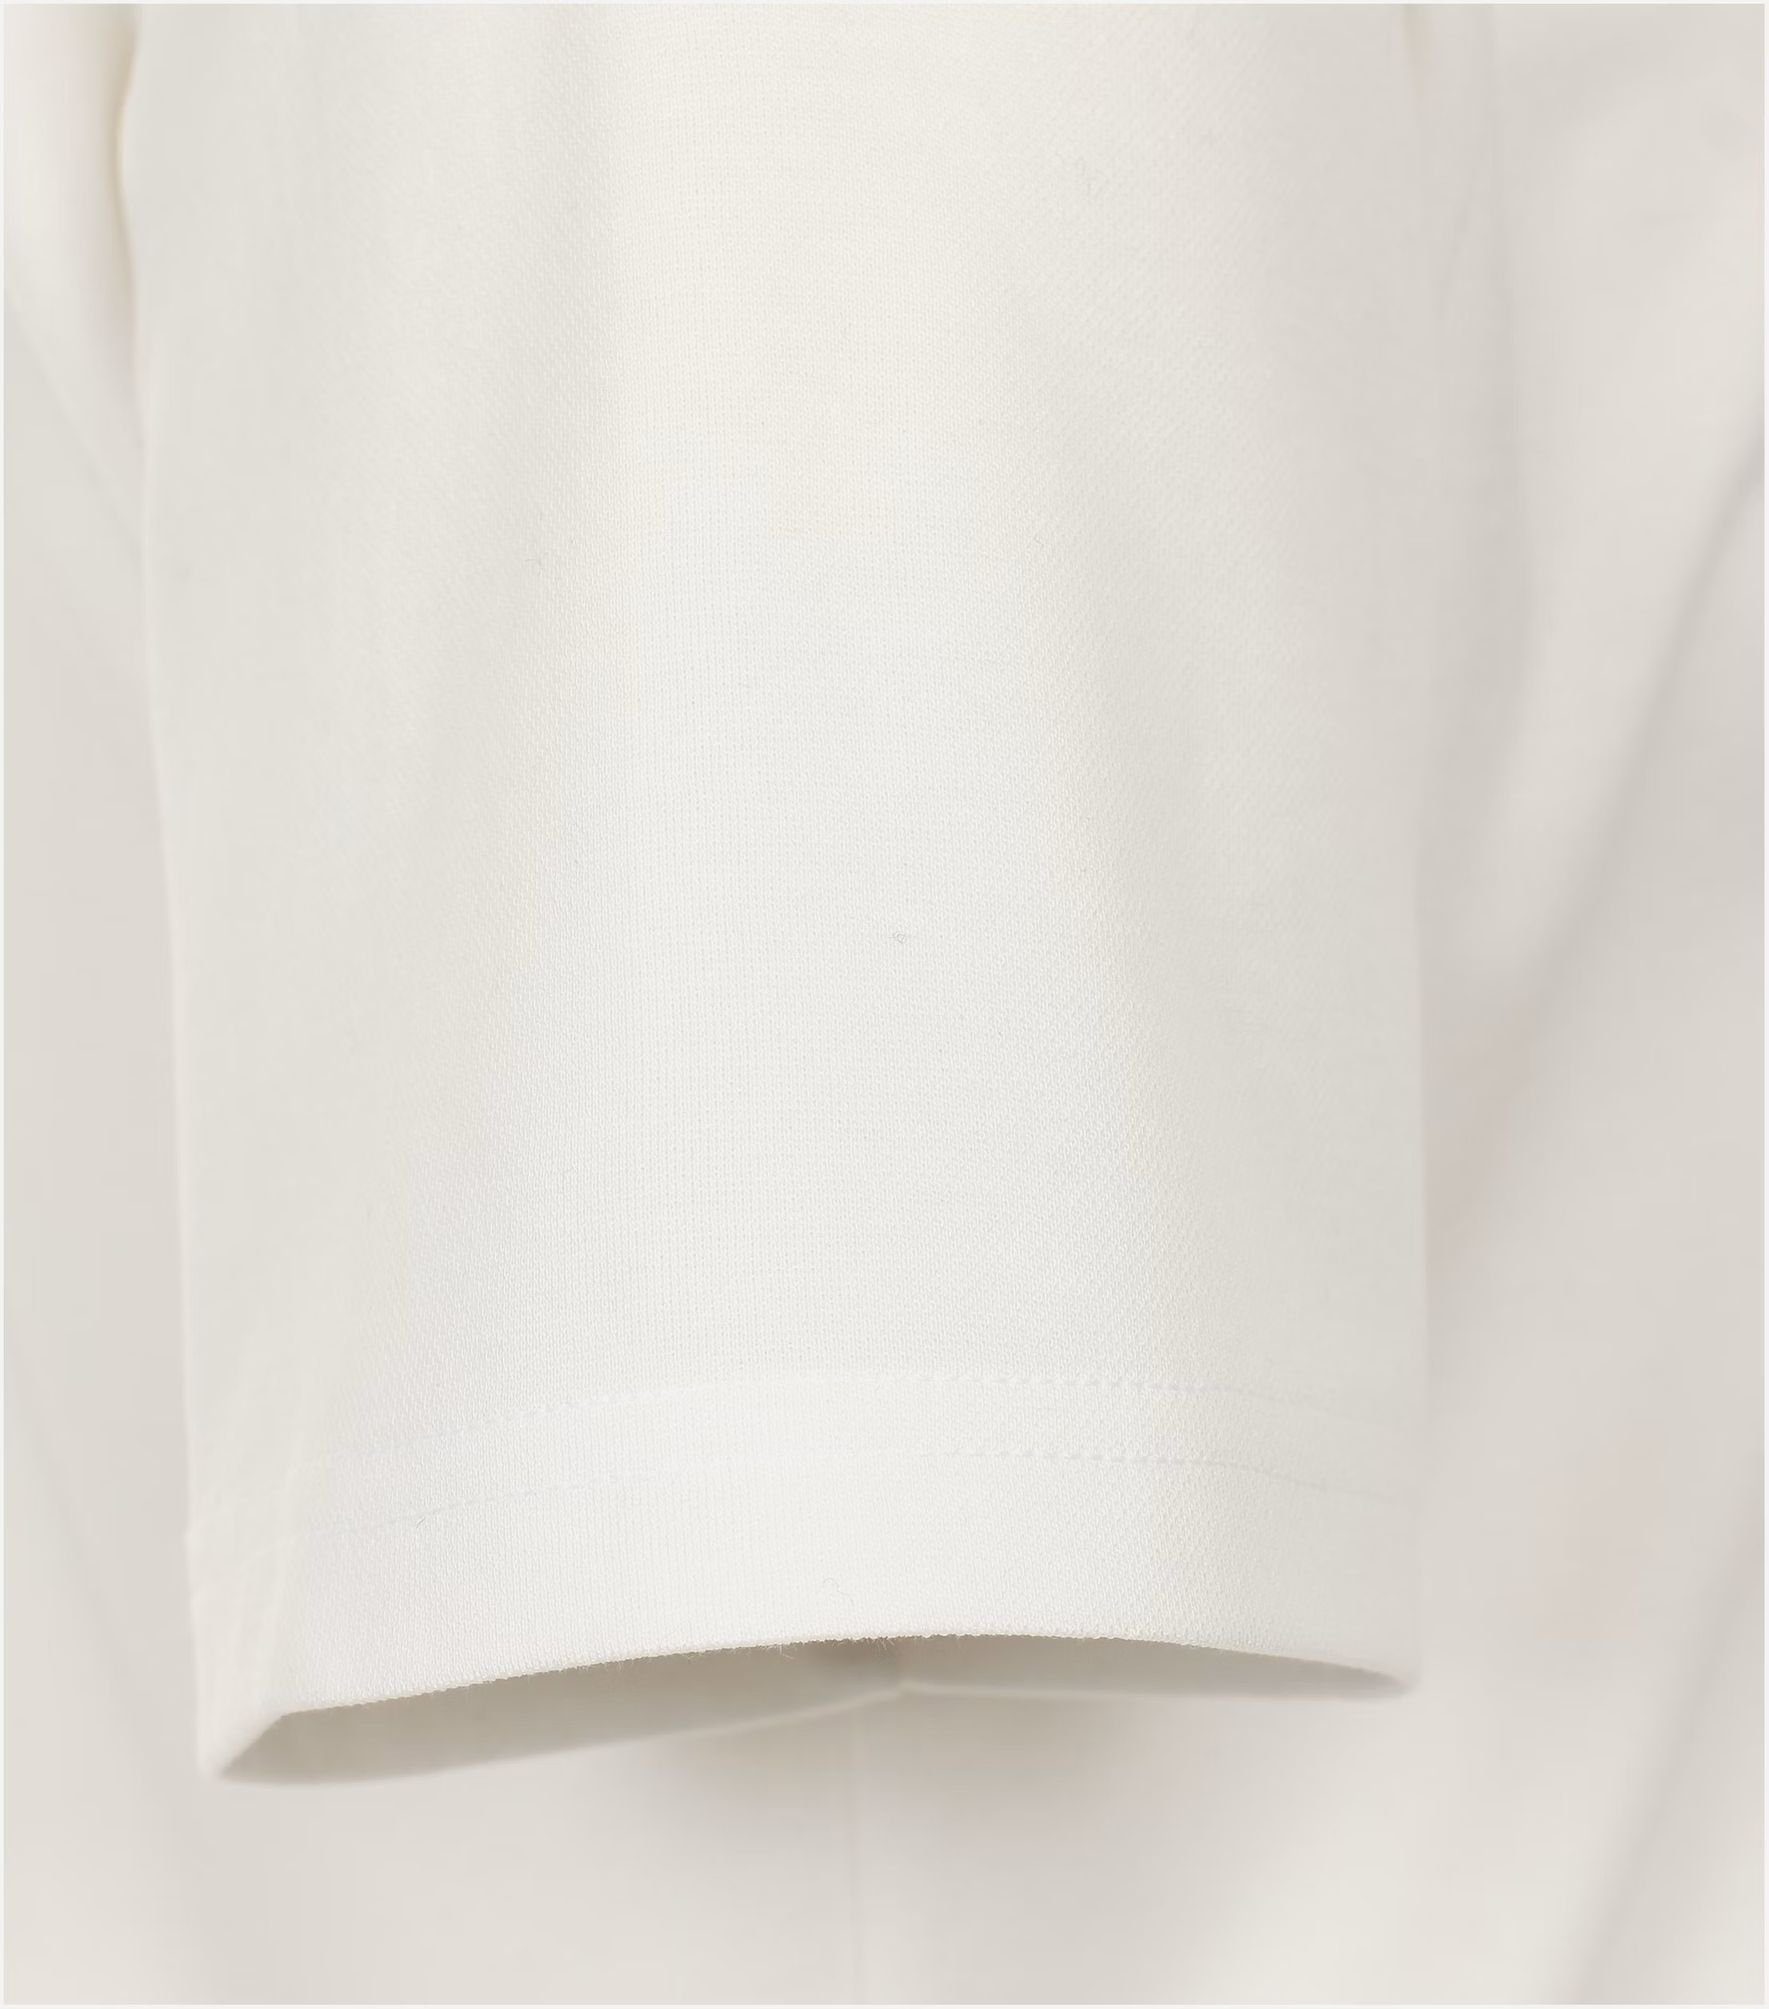 231930650 Weiß(0) pflegeleicht Redmond T-Shirt